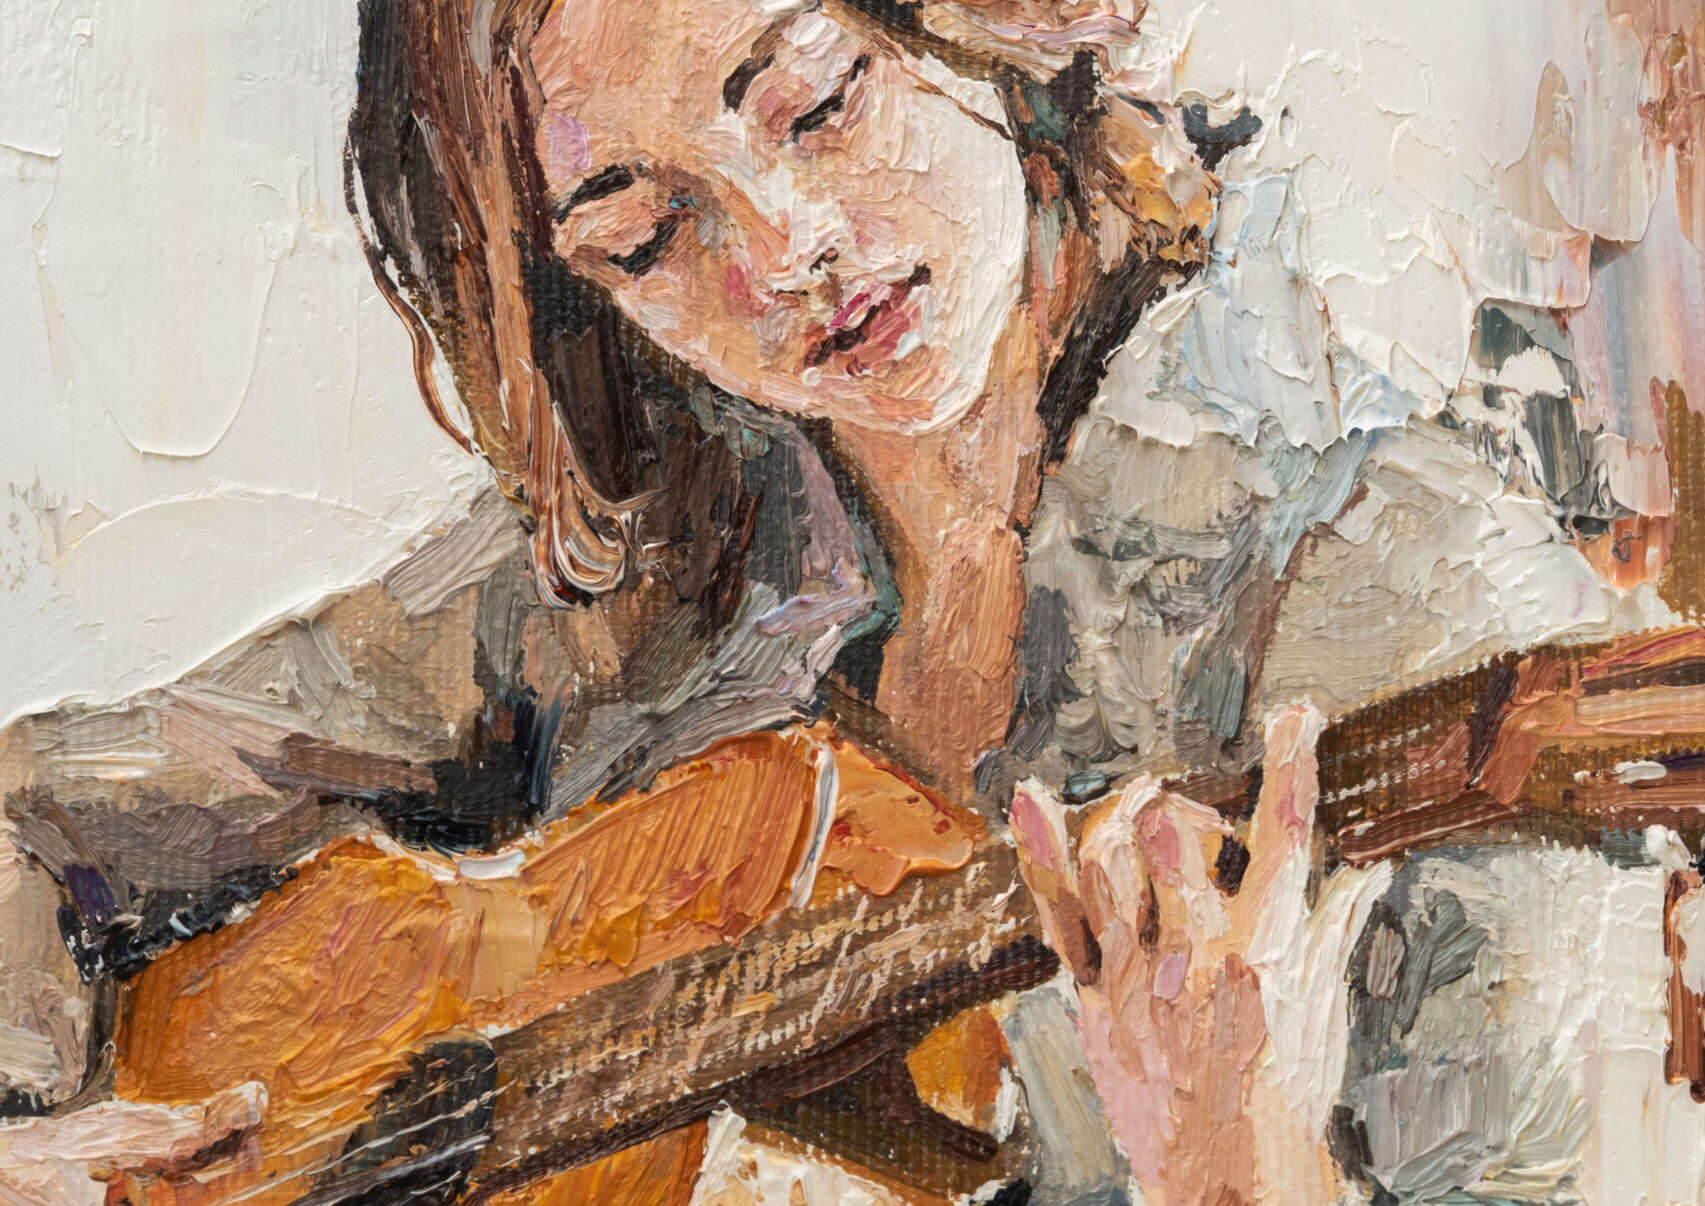 Slika žene koja svira gitaru